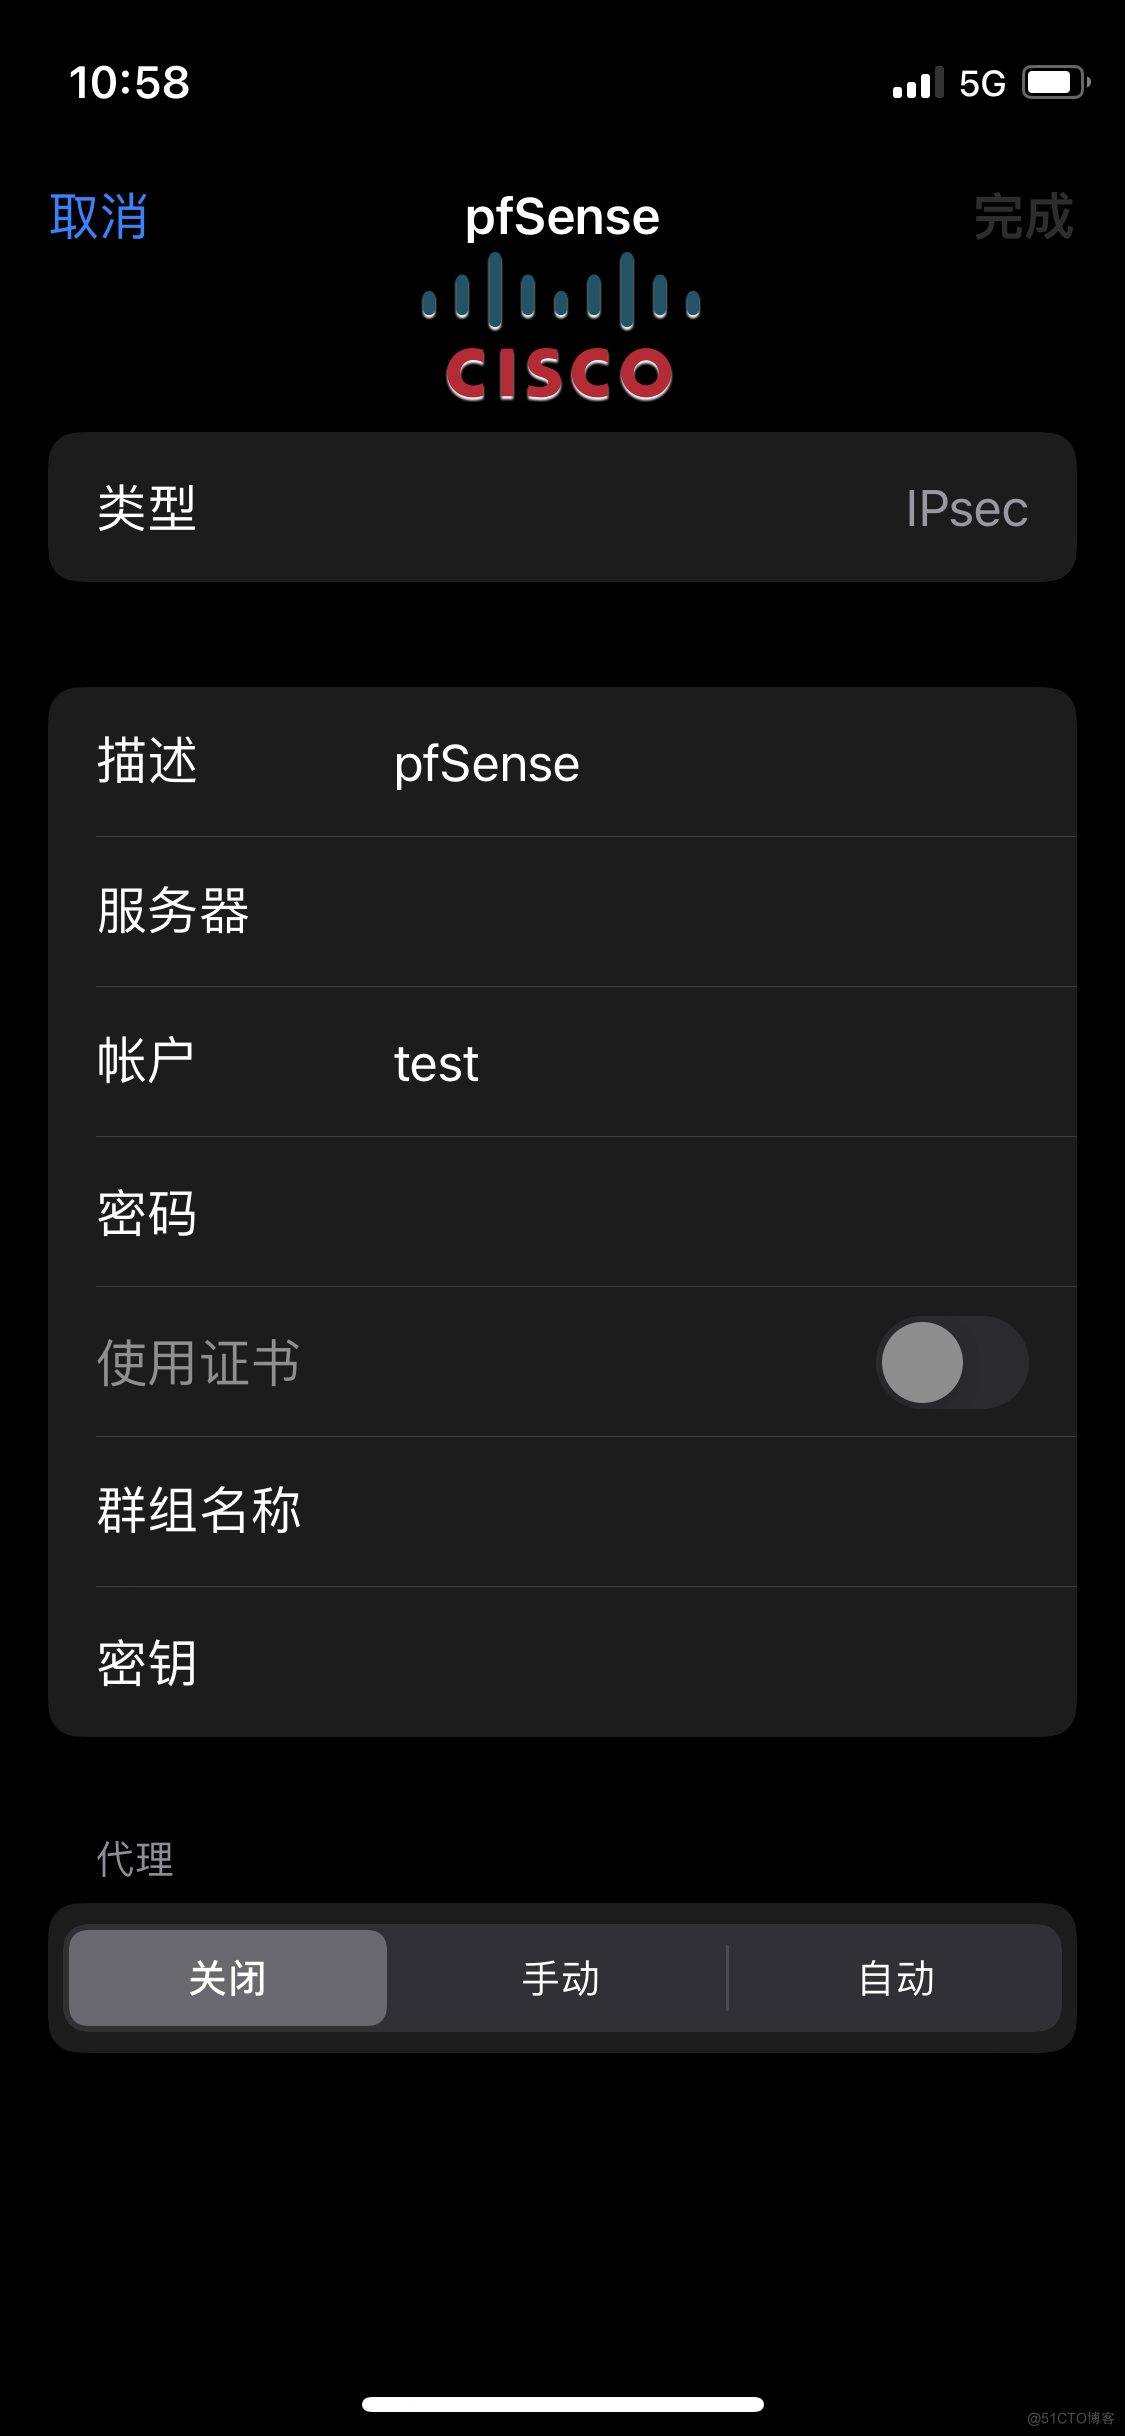 移动端通过IPsec访问pfSense防火墙配置指南_pfsense ipsec 远程_13